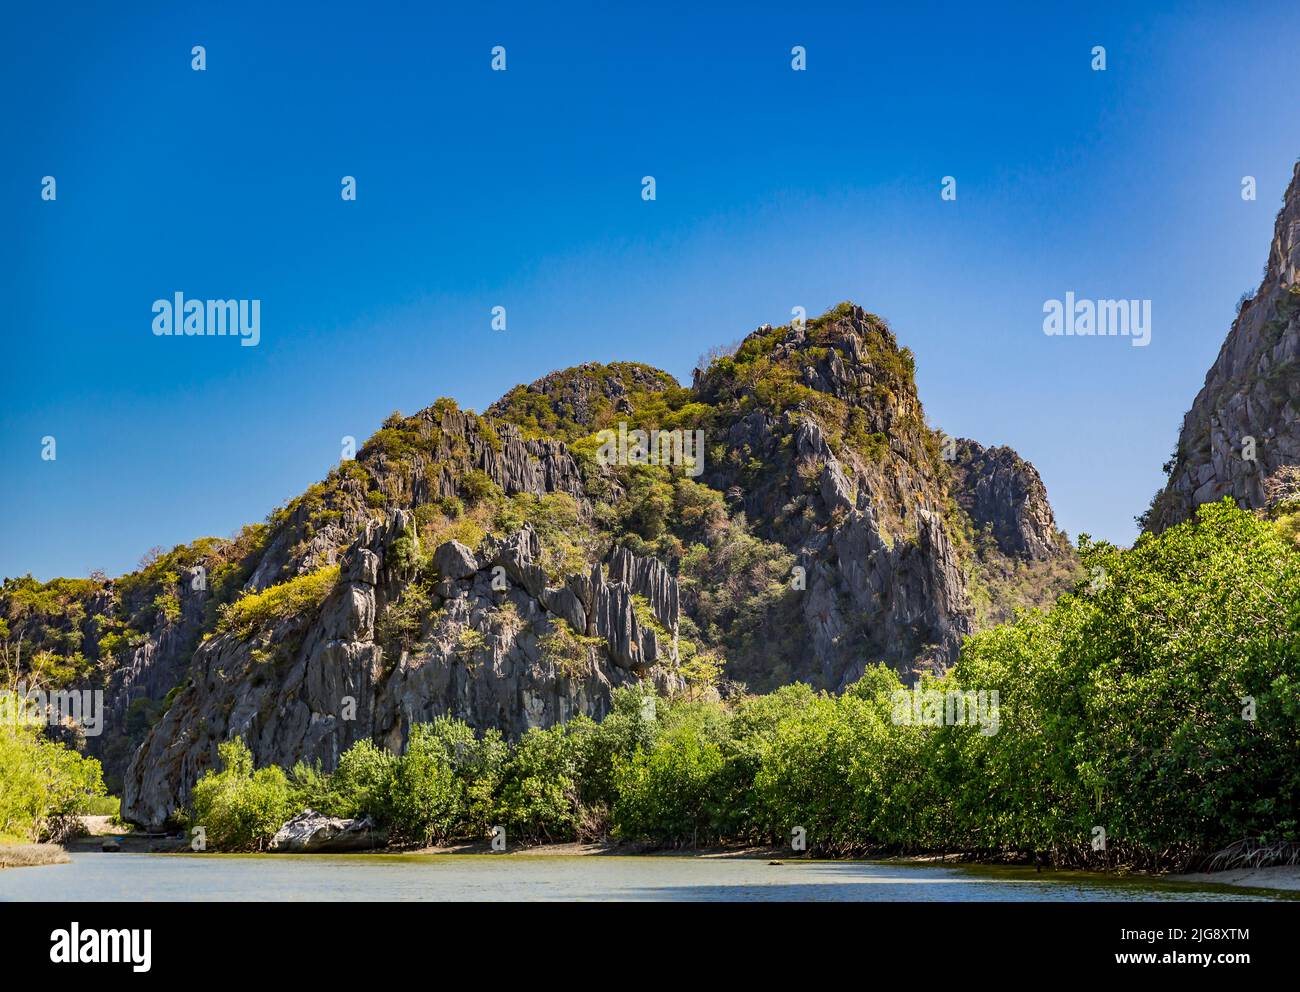 Rochers, excursion en bateau sur la rivière Khao Daeng, parc national Khao Sam Roi Yot, province de Prachuap Khiri Khan, Thaïlande, Asie Banque D'Images